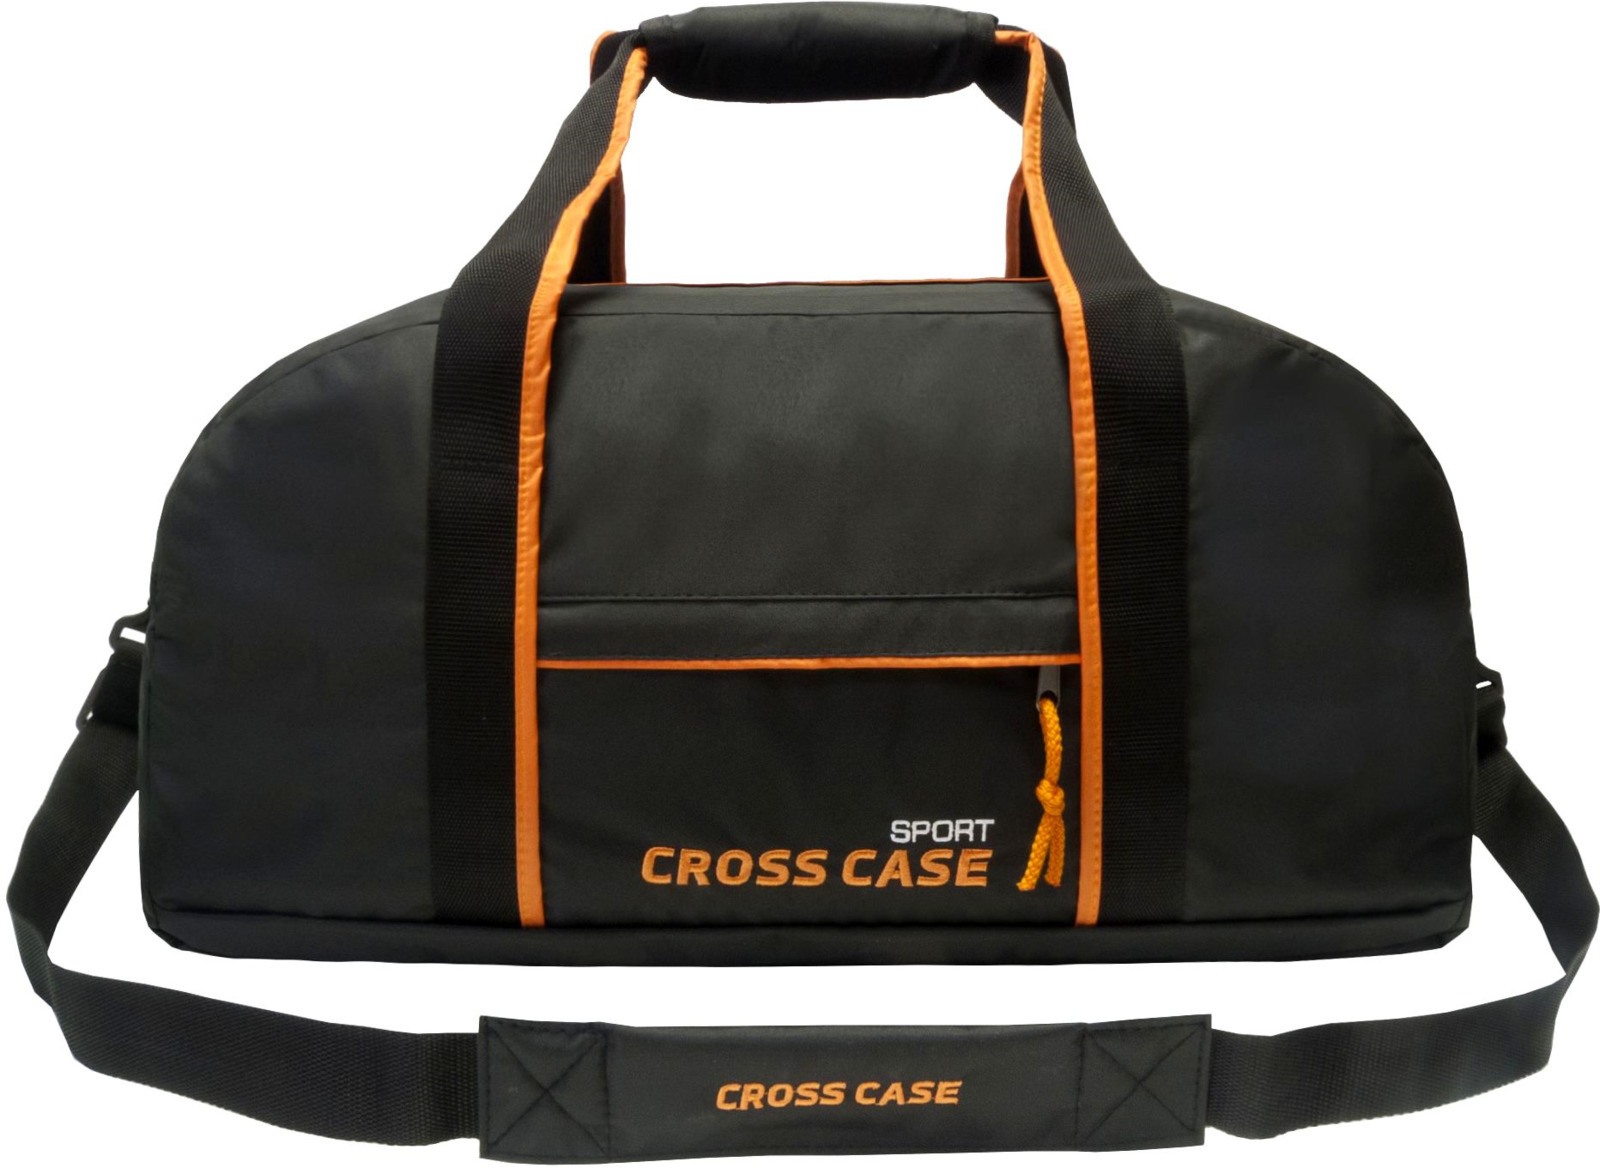 Сумка Cross Case, цвет: черный, оранжевый. CCS-1040-09